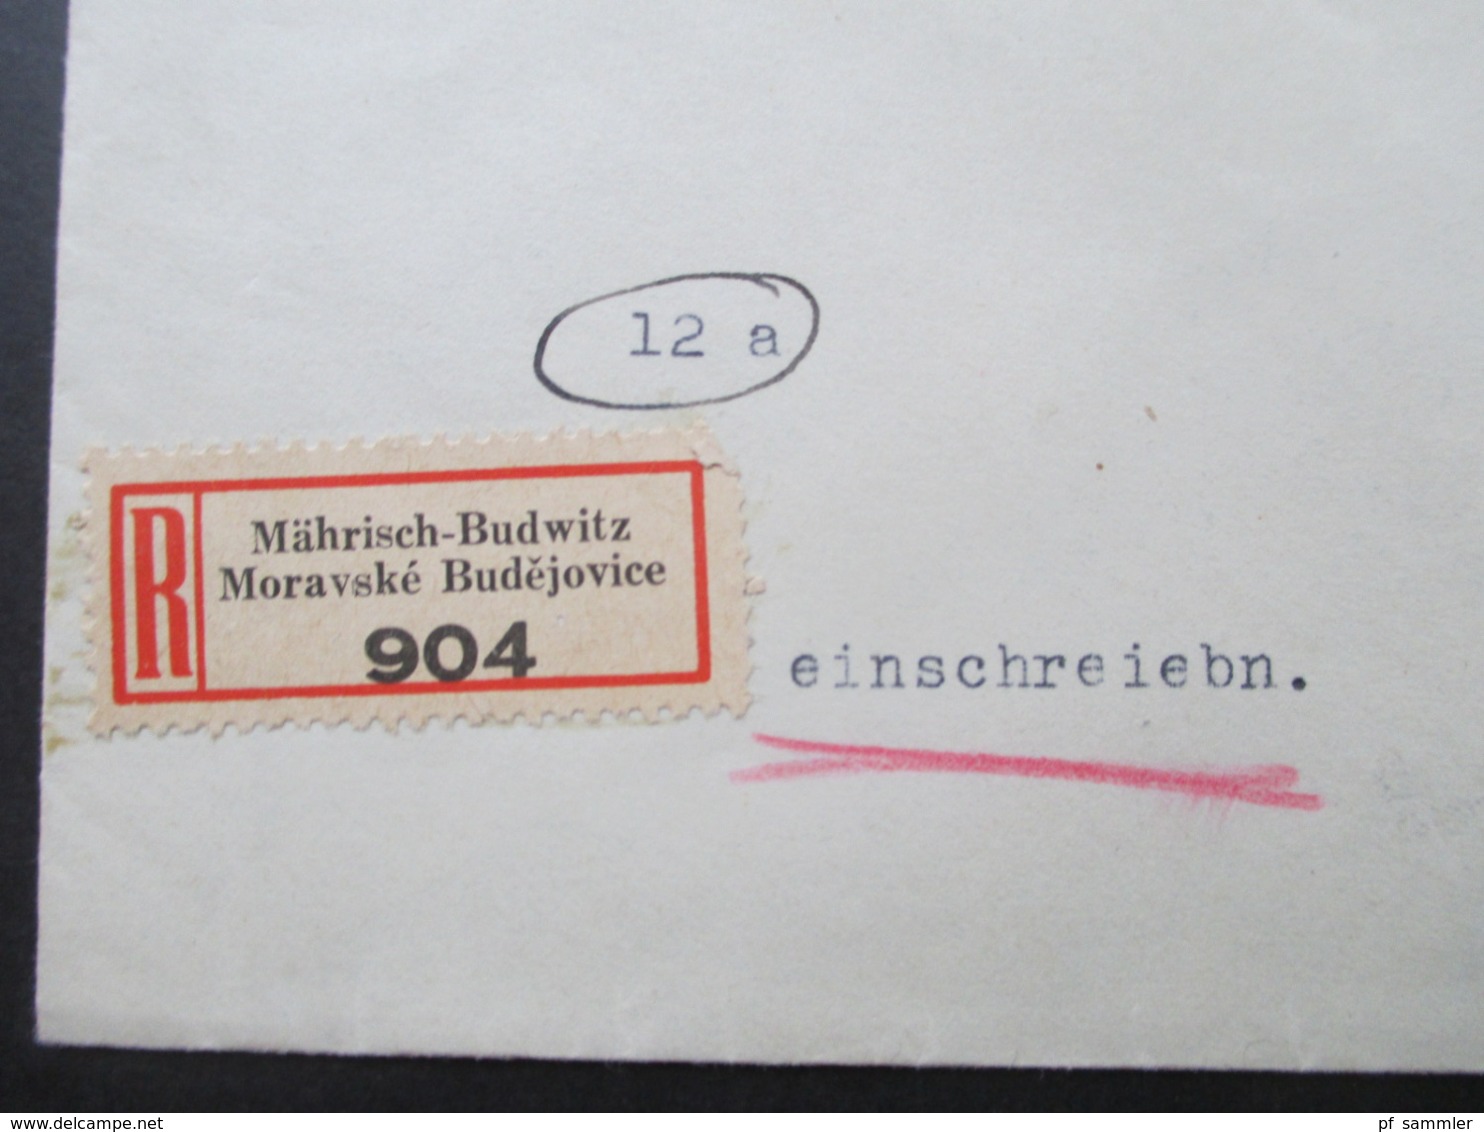 Böhmen Und Mähren Einschreiben 2 Sprachiger E Zettel Mährisch Budwitz Moravske Budejovice - Wien Freimarken Adoif Hitler - Covers & Documents